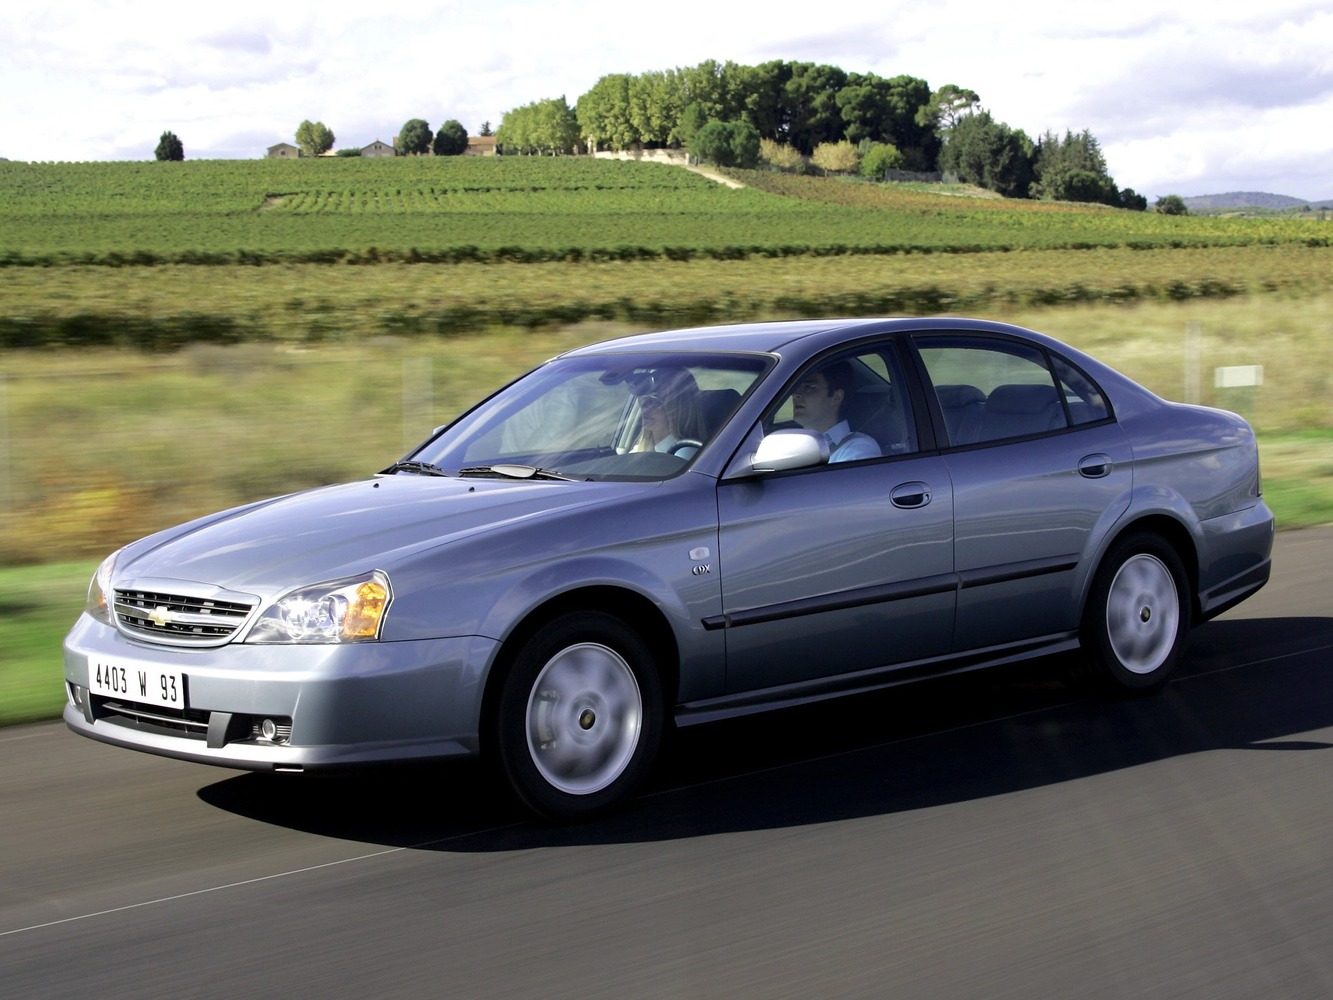 Chevrolet Evanda – это седан средних размеров, относящийся к D-классу Производился с 2004 по 2006 год и в свое время пришел на смену автомобилю Leganza